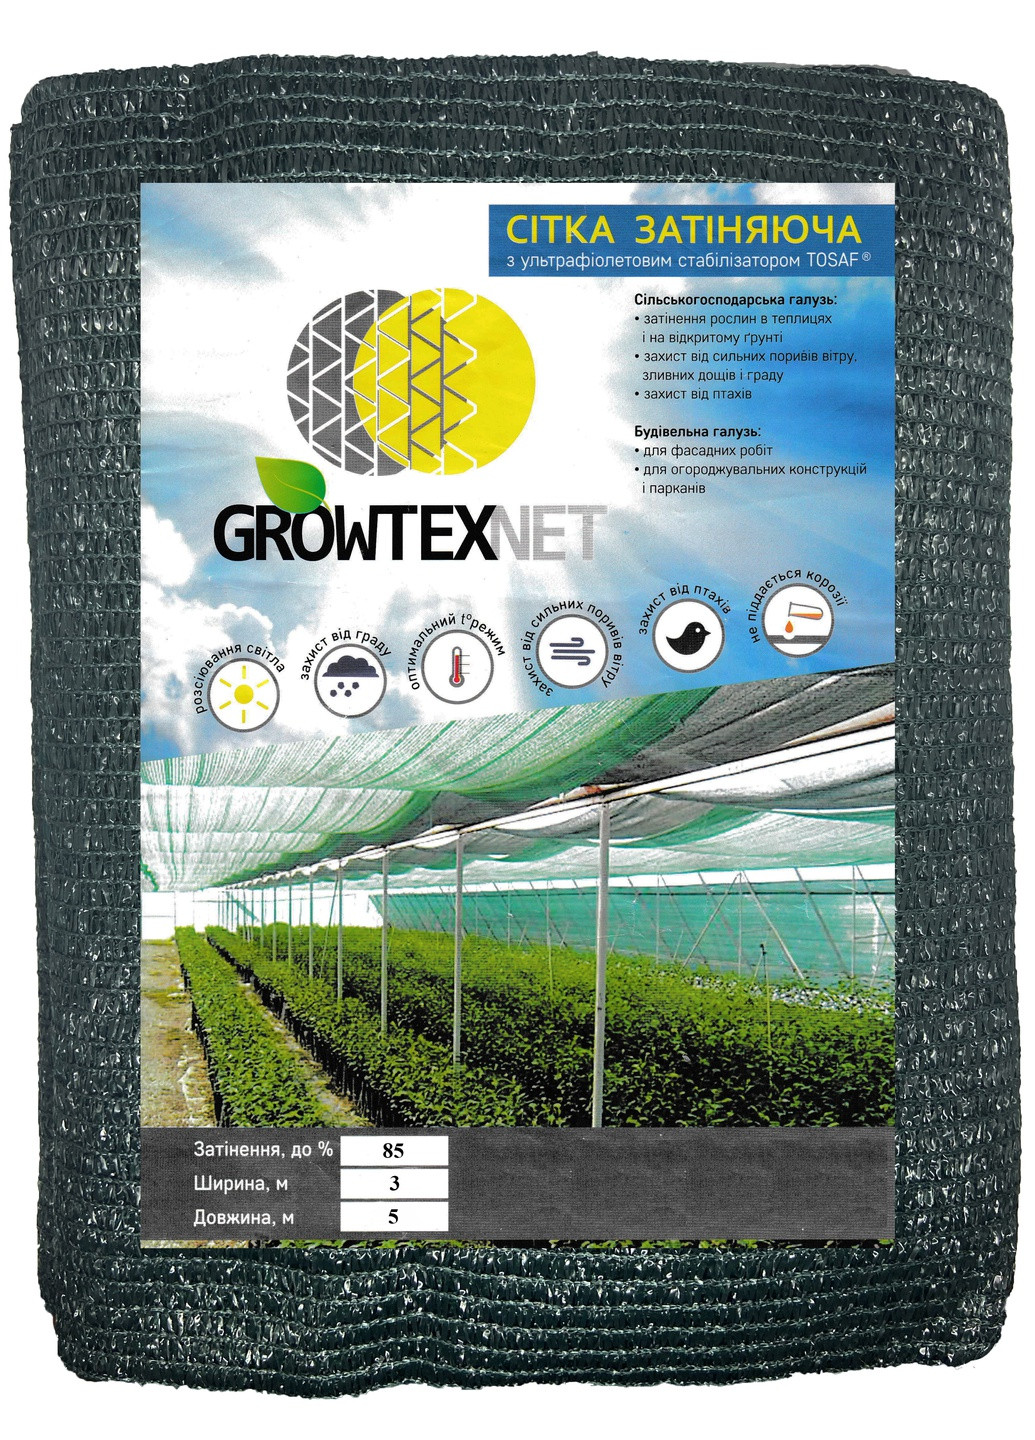 Сітка затіняюча Growtex Net з ультрафіолетовим стабілізатором 85% (80 гр/м2) розмір 3х5 м Одетекс (258457576)